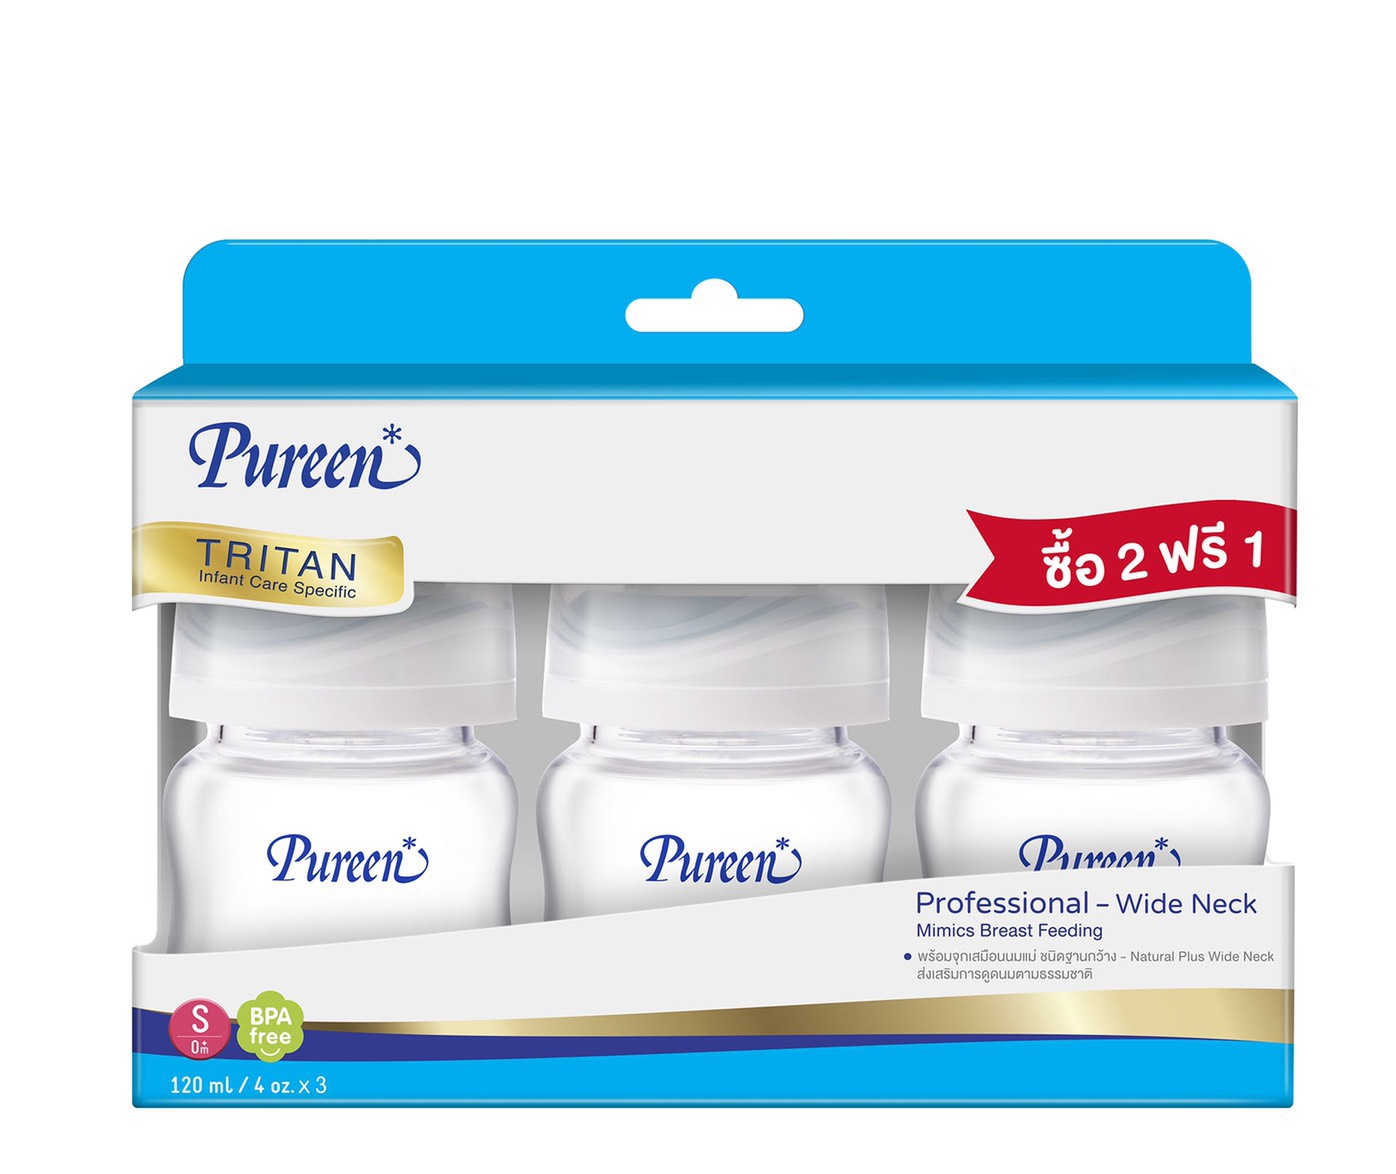 Pureen Tritan ขวดนมเพียวรีน คอกว้าง 4oz-8oz(2 ฟรี 1 รวม 3 ขวด) พร้อมจุก Natural Plus